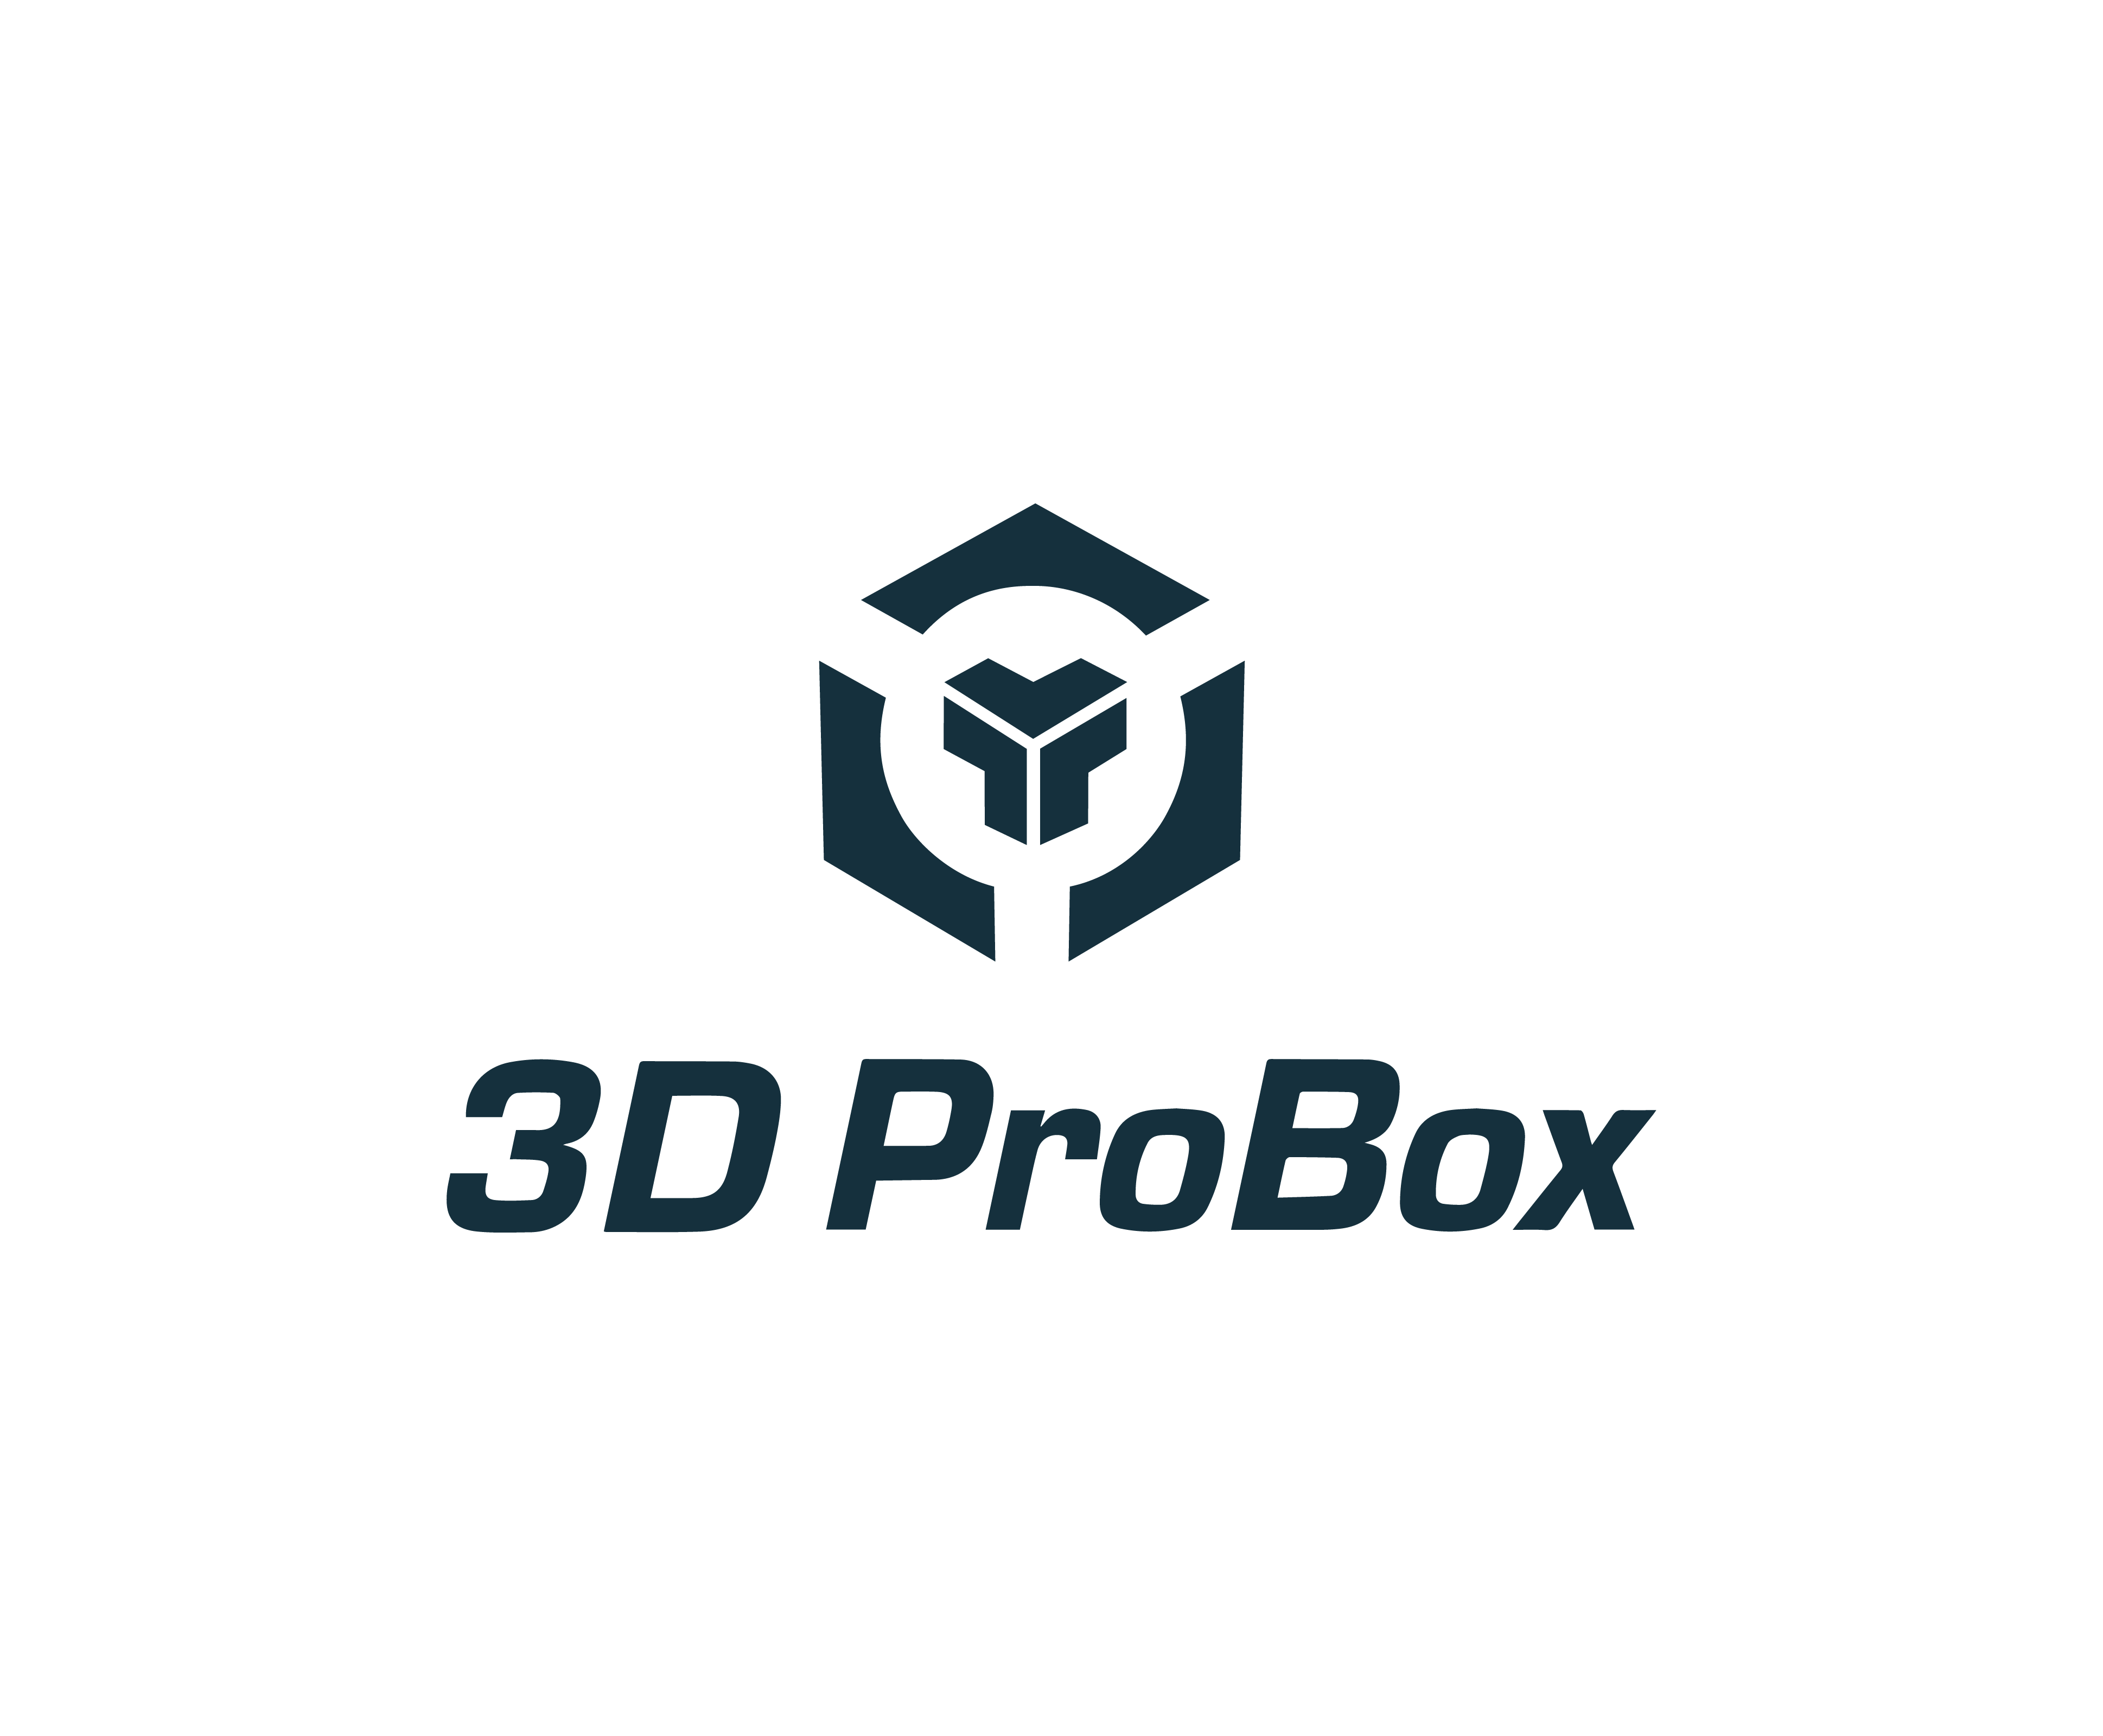 3D PROBOX TEKNOLOJİ HİZMLETLERİ SAN.VE TİC.A.Ş